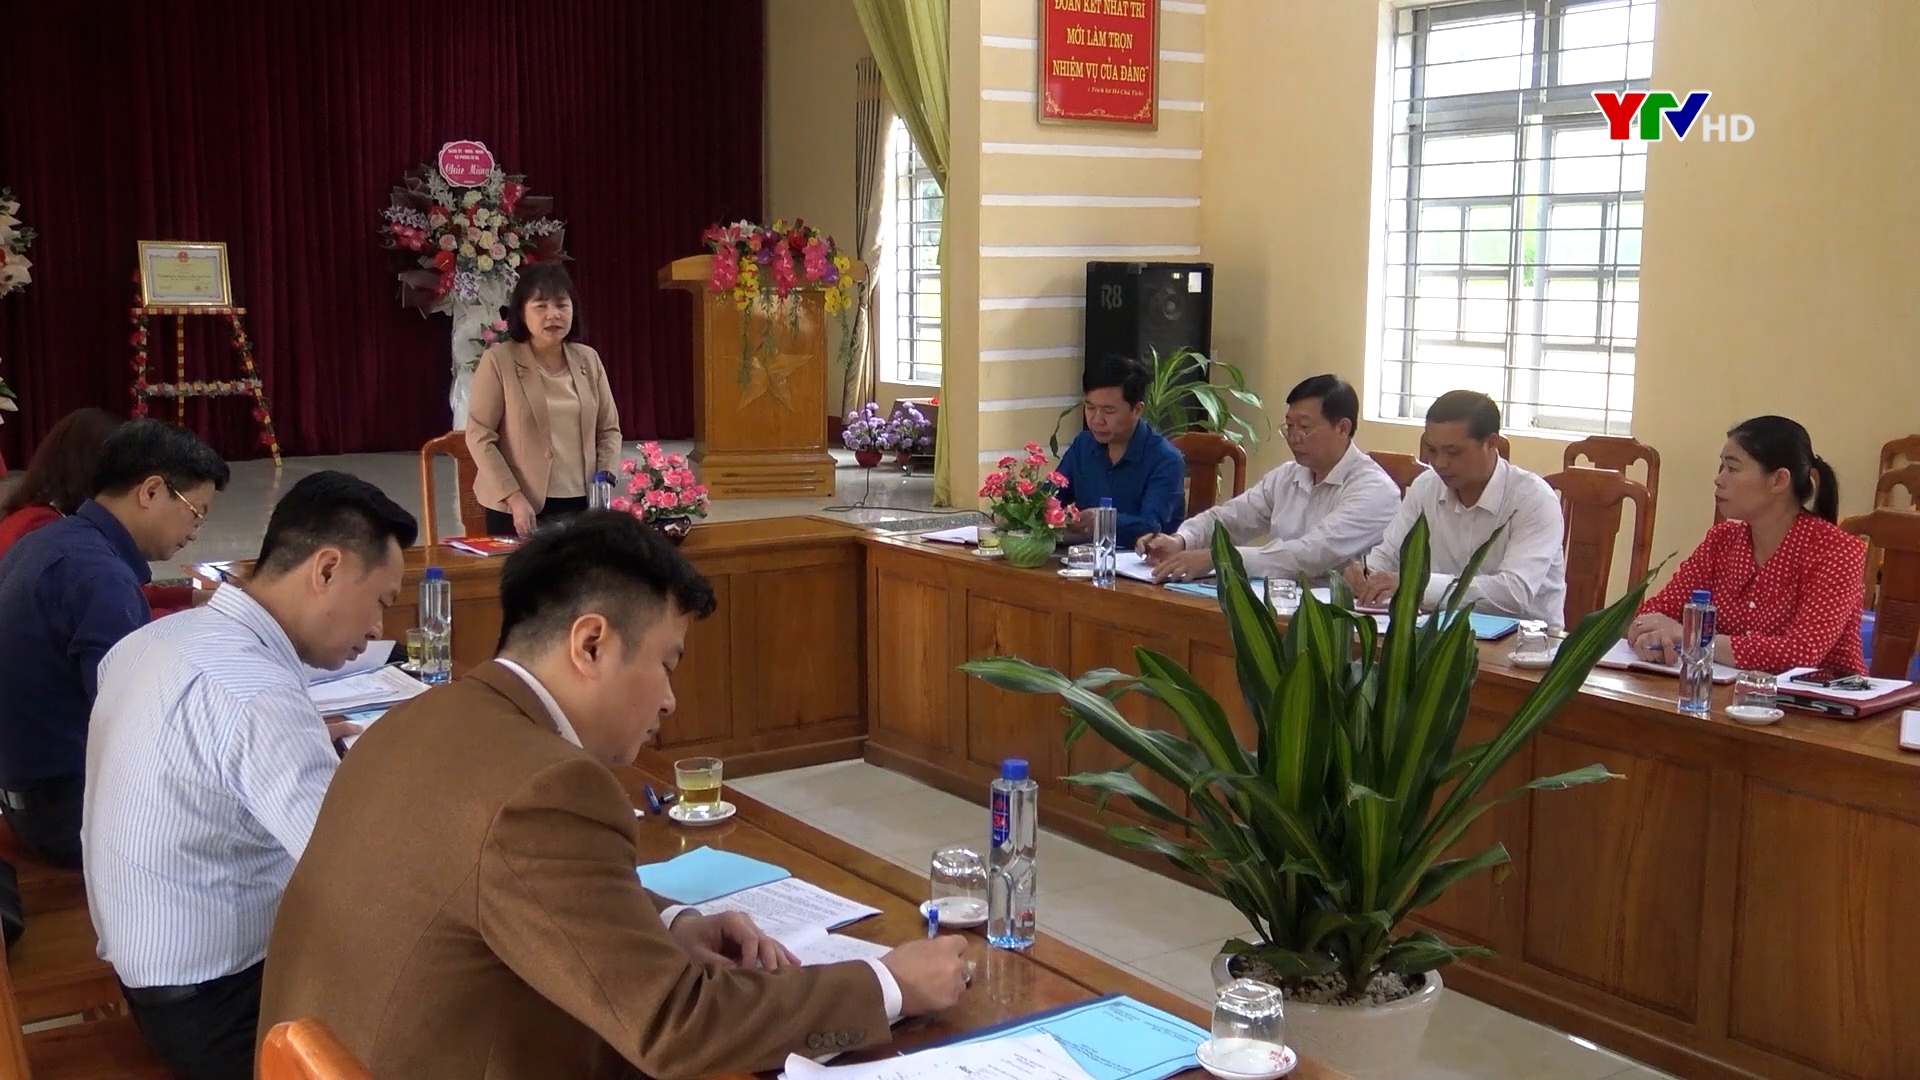 Đồng chí Phó Chủ tịch HĐND tỉnh Hoàng Thị Thanh Bình kiểm tra hoạt động HĐND tại xã Phong Dụ Hạ và xã Xuân Tầm, huyện Văn Yên